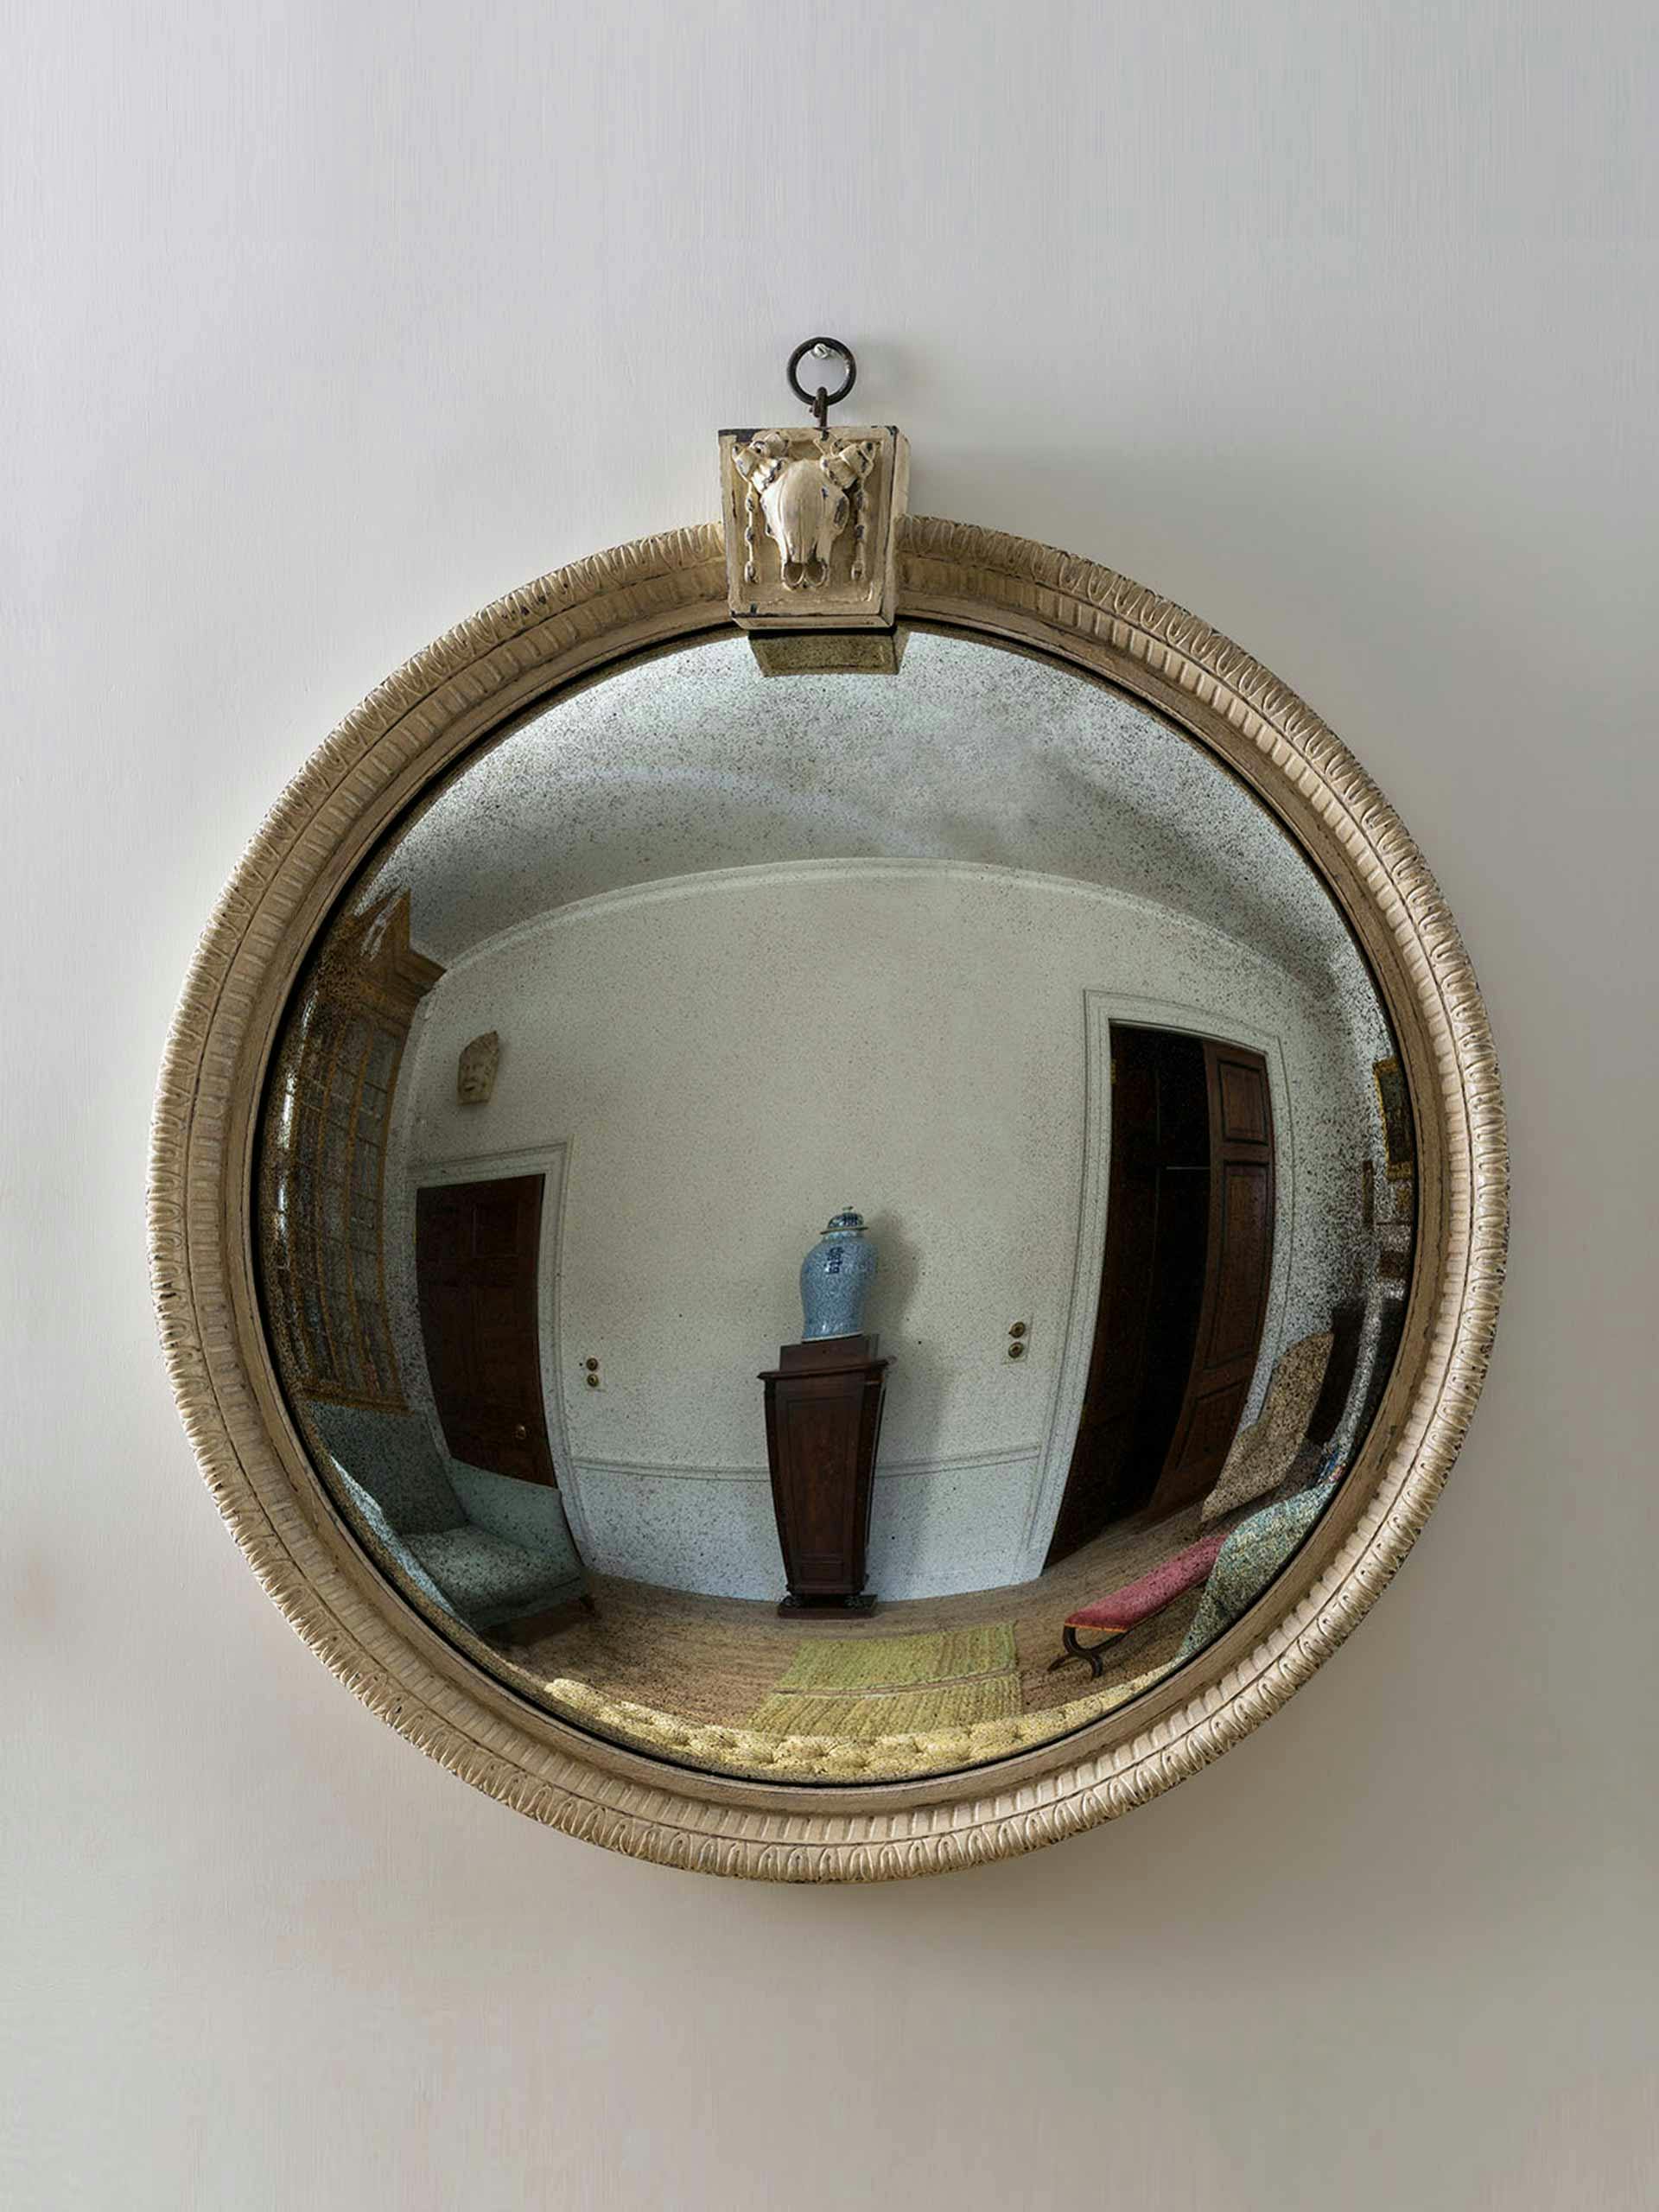 Convex mirror